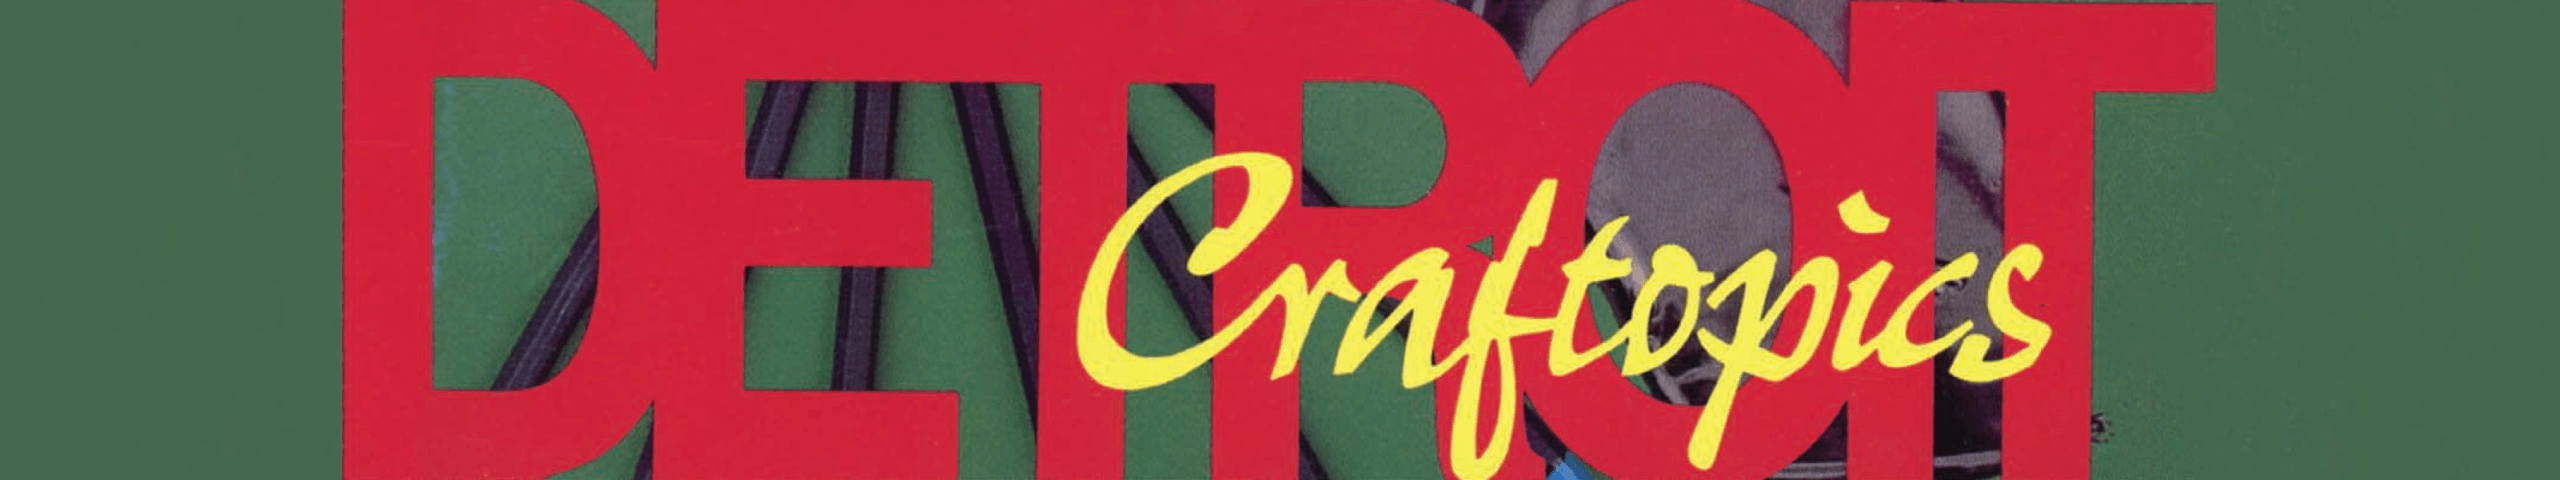 Detroit Craftsmen Craftopics cover image